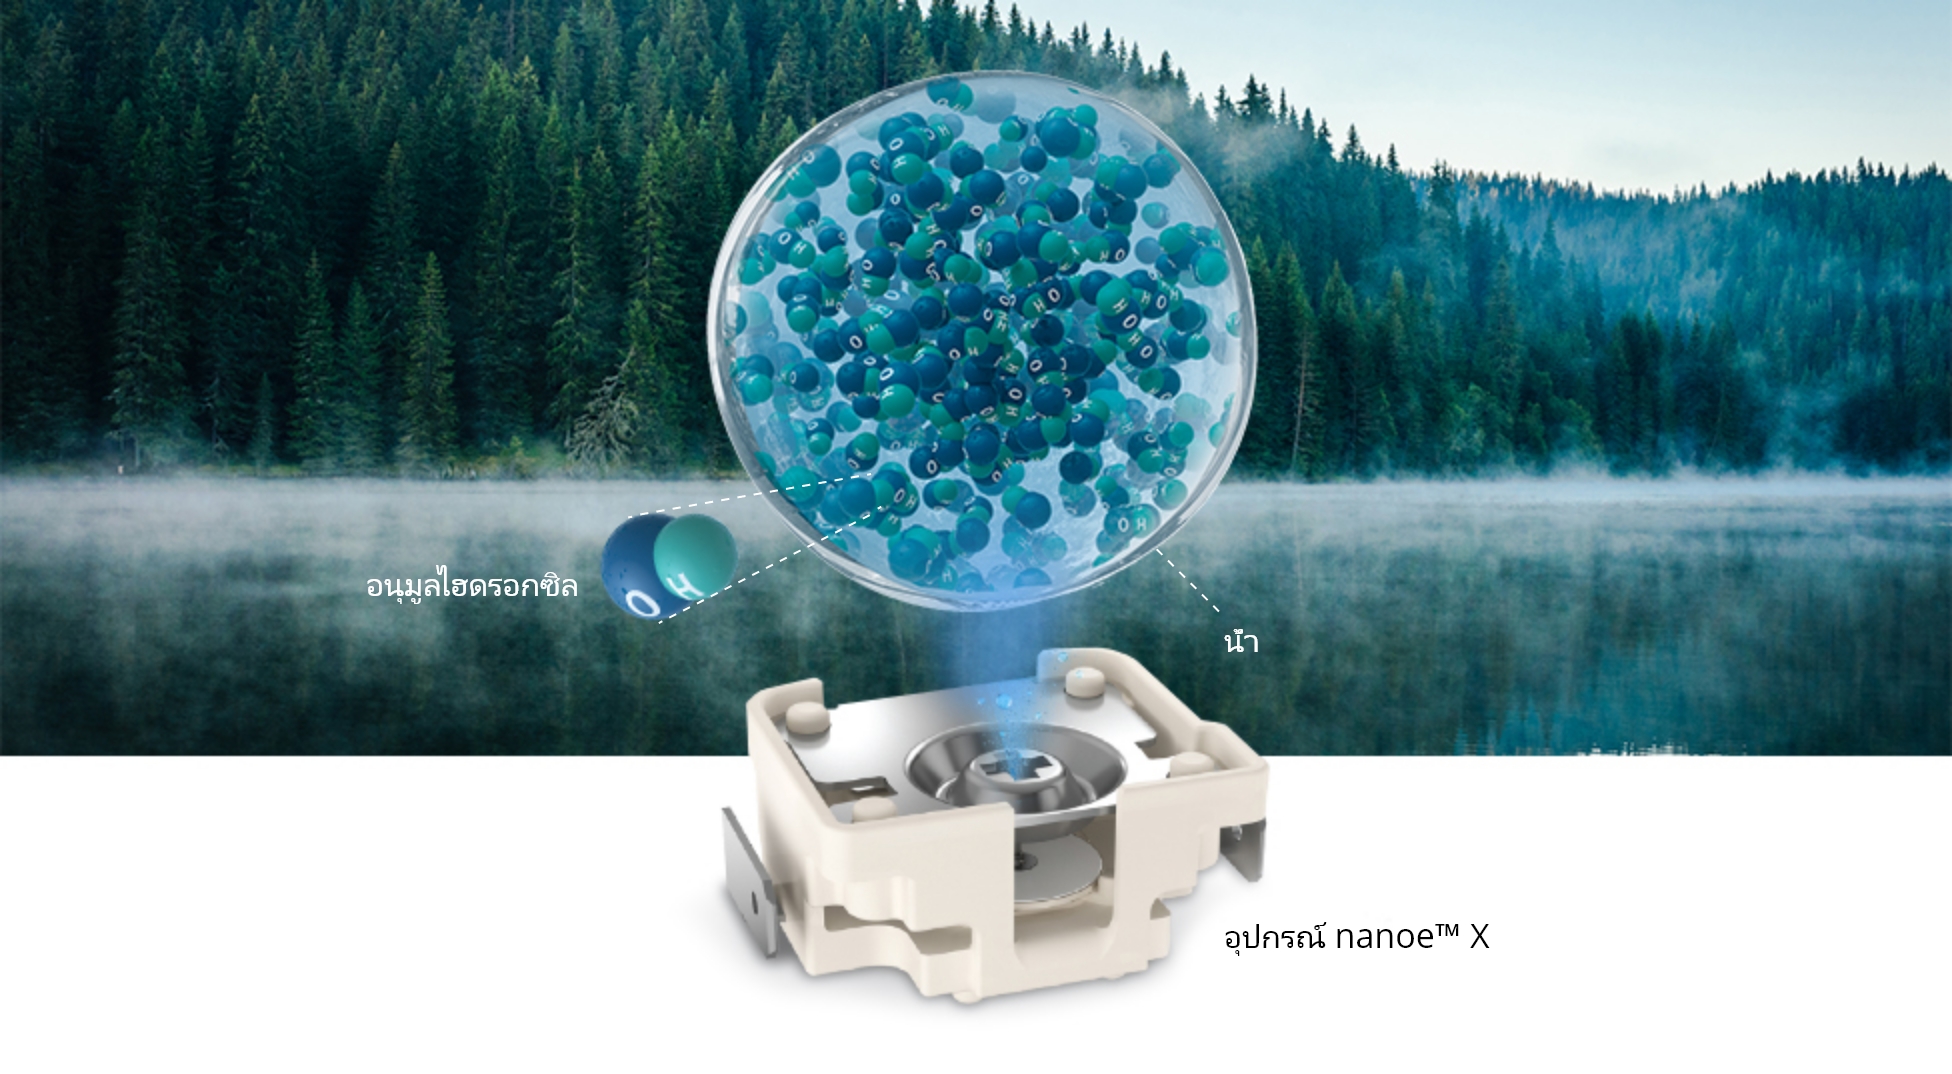 ภาพ nanoe™ X ถูกปล่อยออกมาจากอุปกรณ์ และภาพป่าและริมทะเลสาบที่เงียบสงบและมีหมอกลอยอยู่บนผิวน้ำ